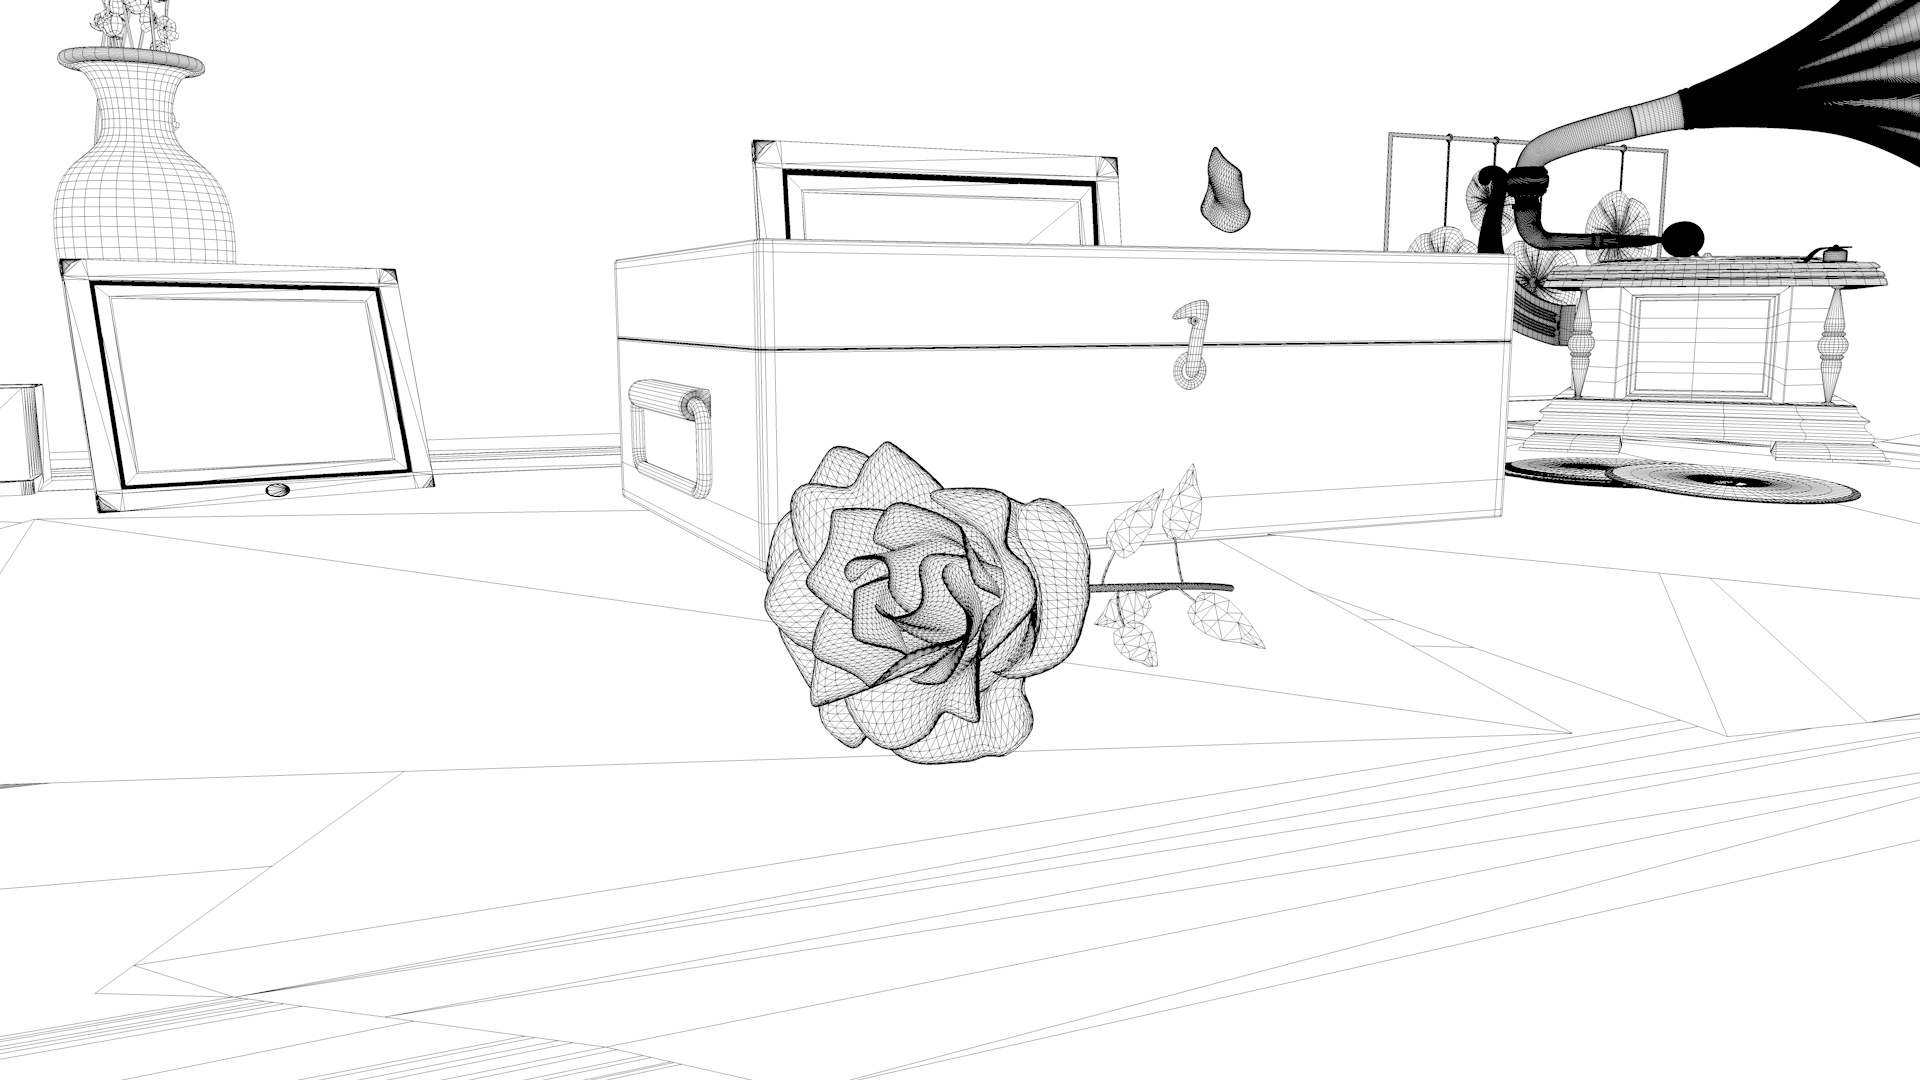 Rose croissant scène sur le bureau animation de modèle 3d